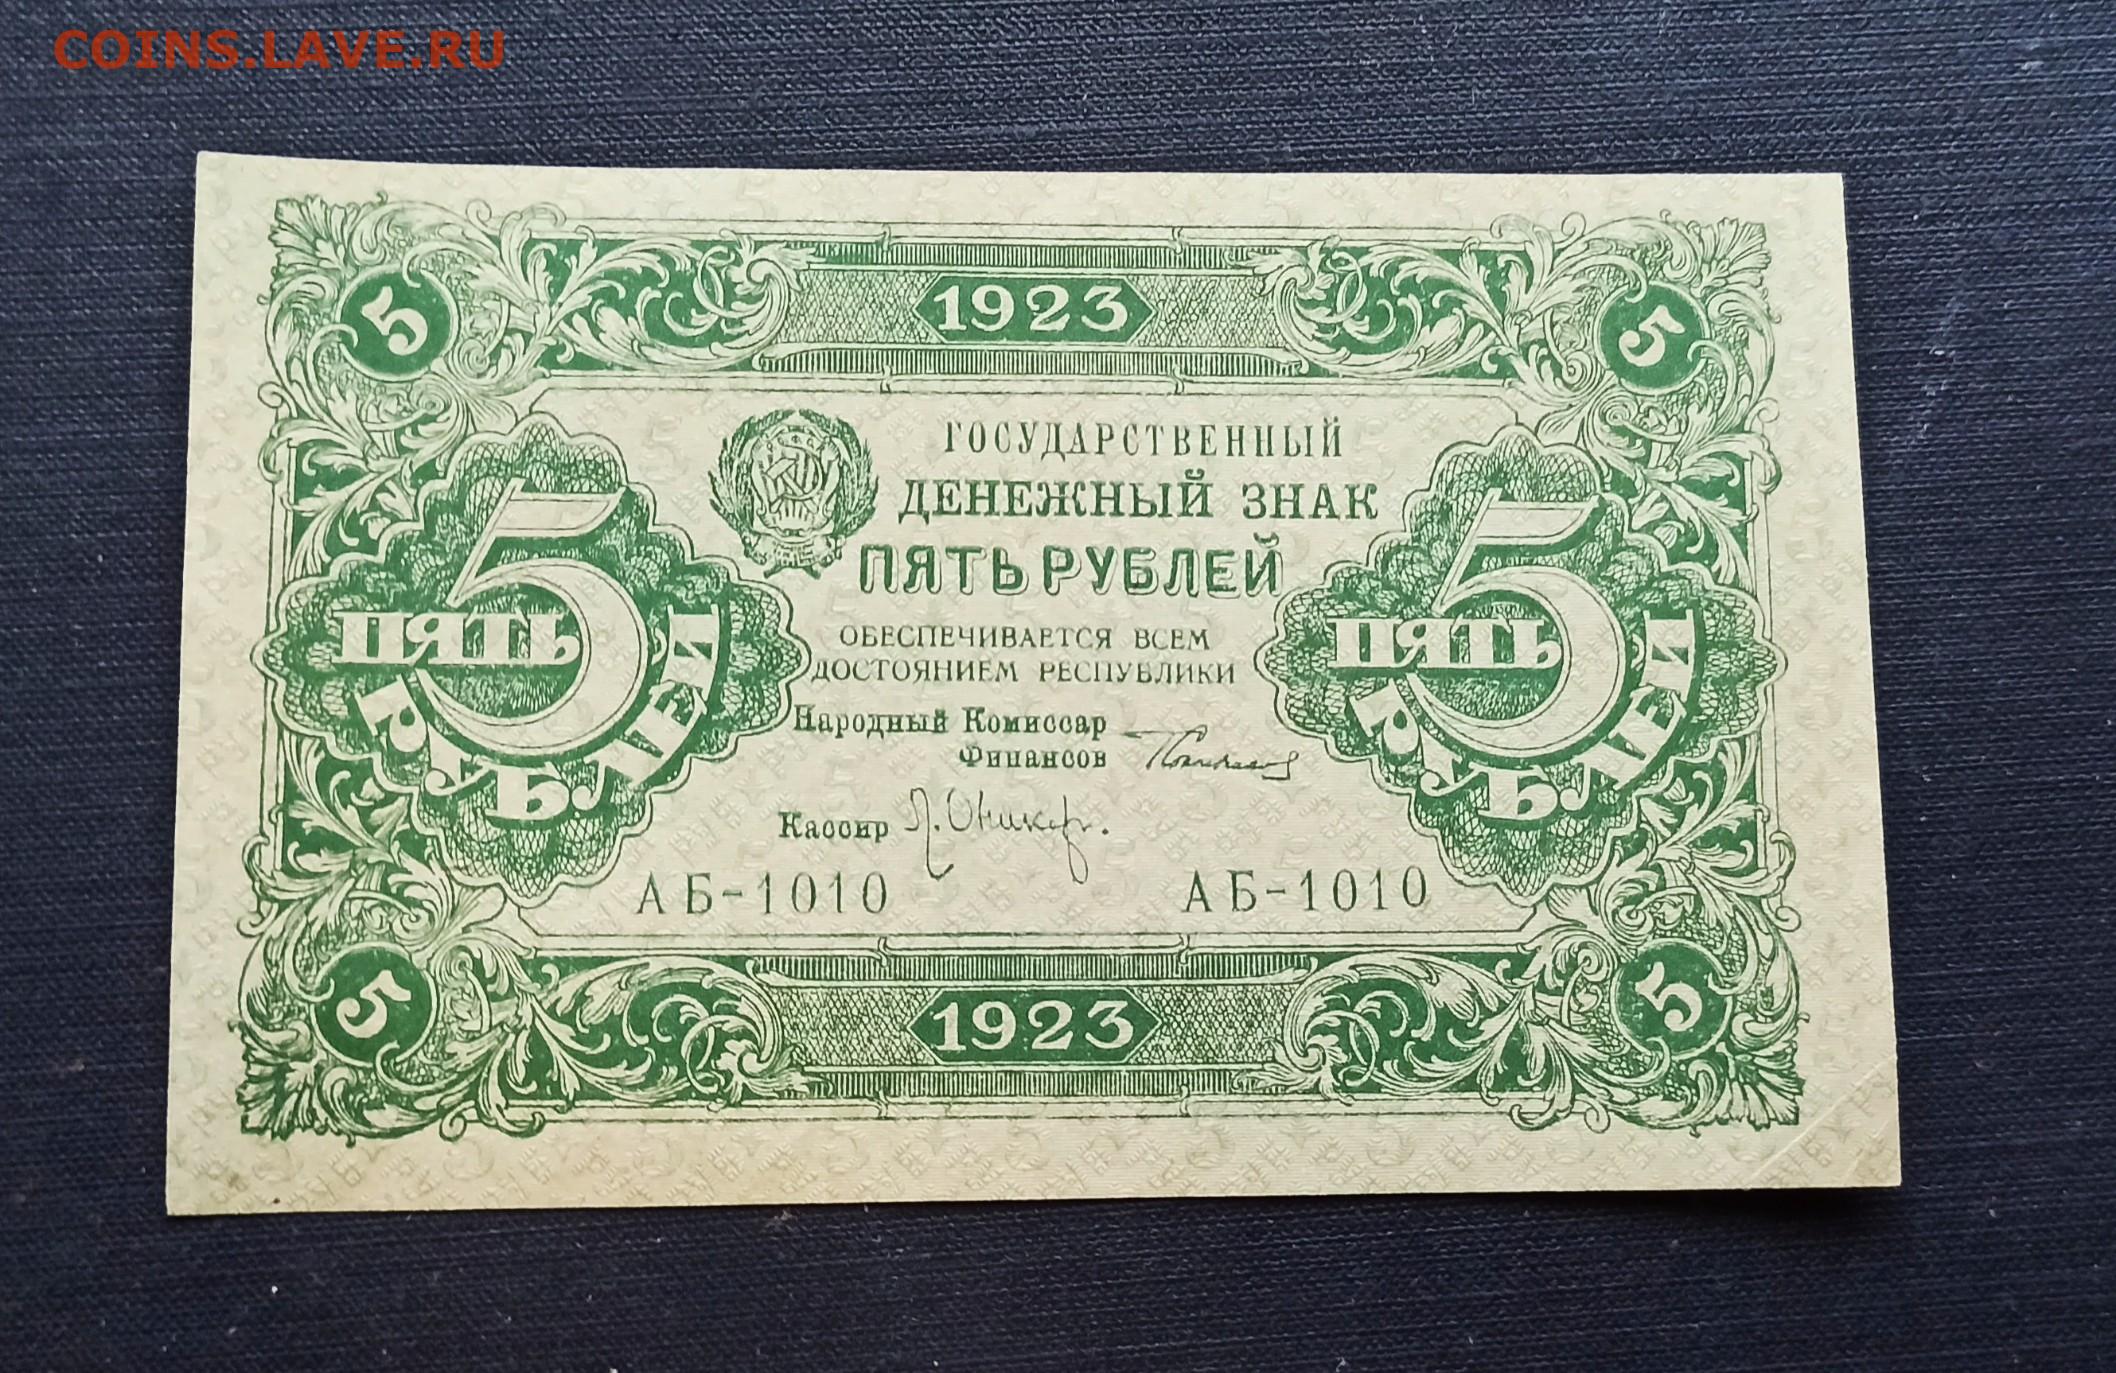 5 рубль года выпуска. 5 Рублей 1923 года. Деньги 1830 года бумажные. Рубль 1923 года. Купюры 1830 год.